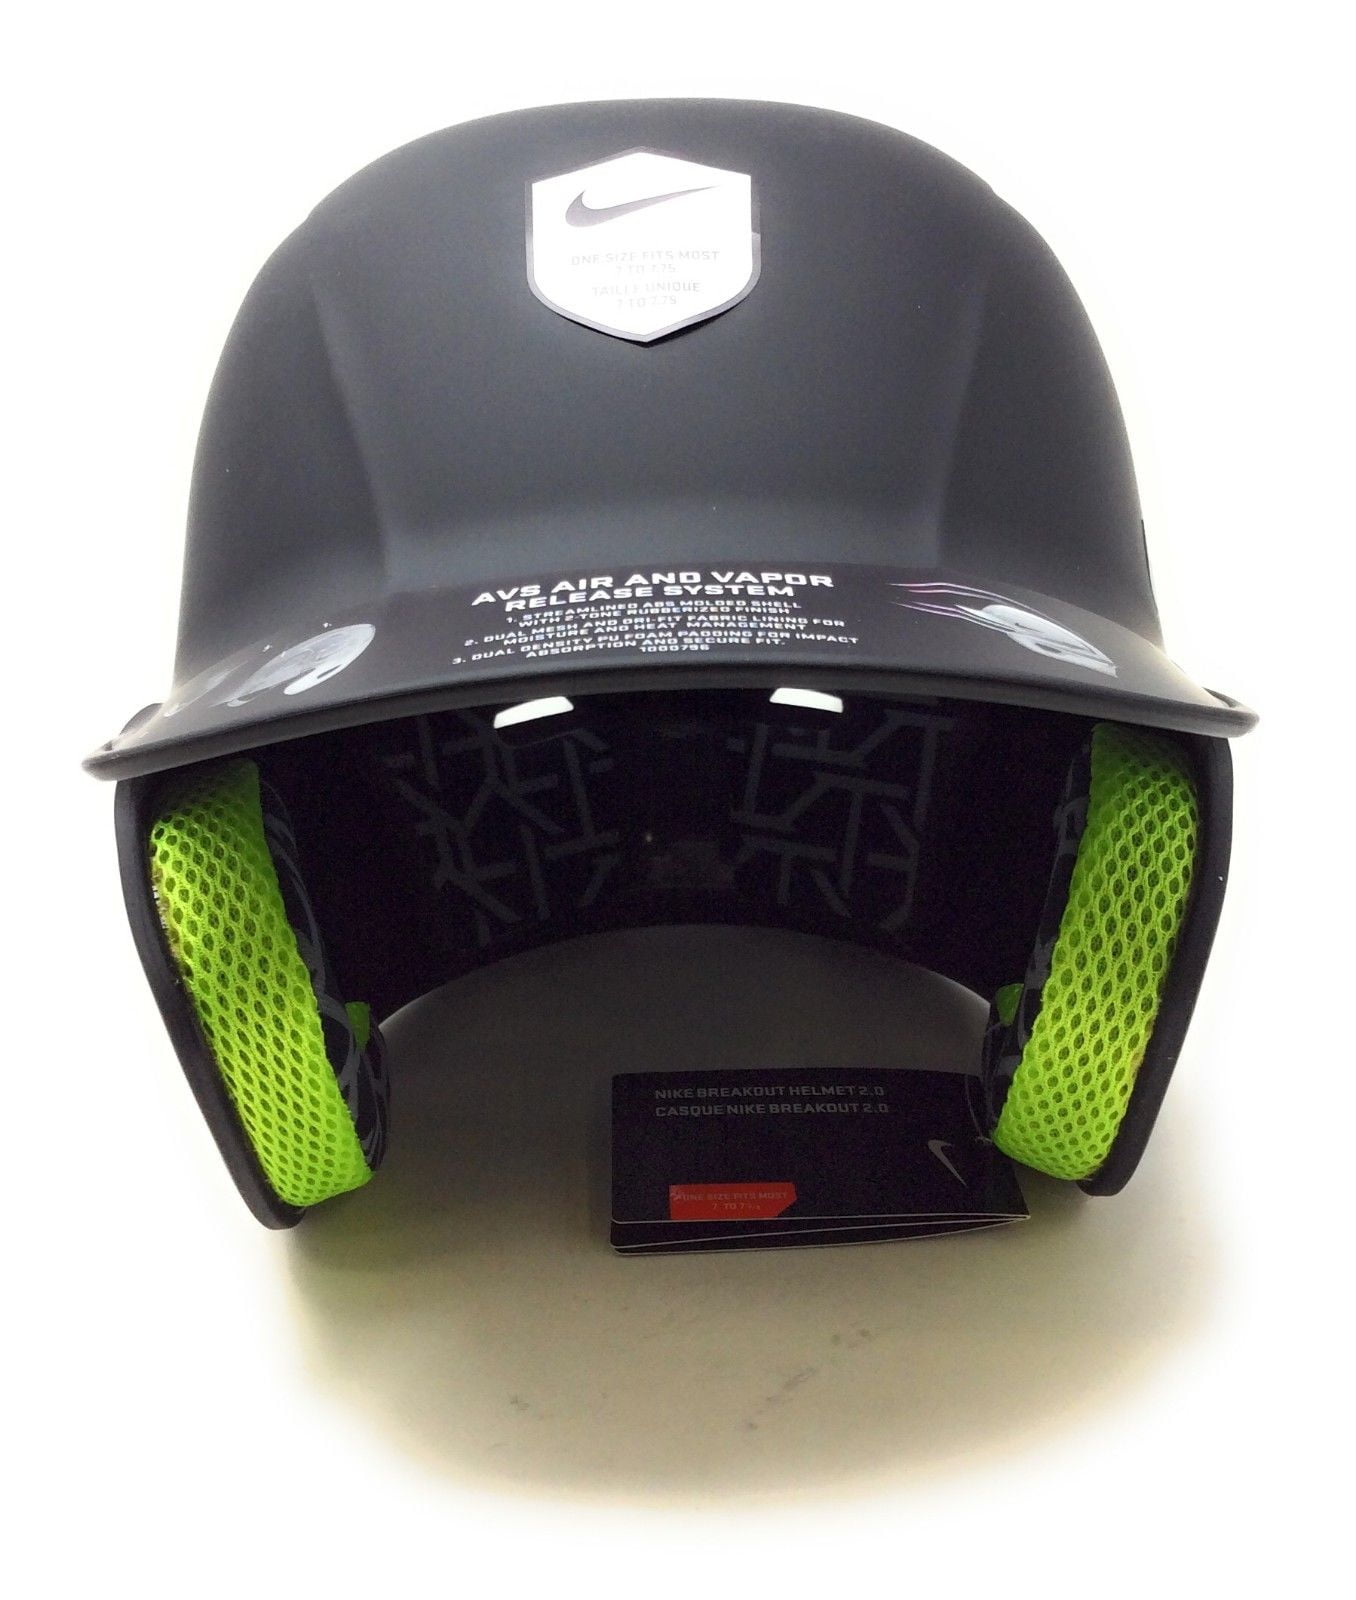 nike breakout 2.0 baseball helmet